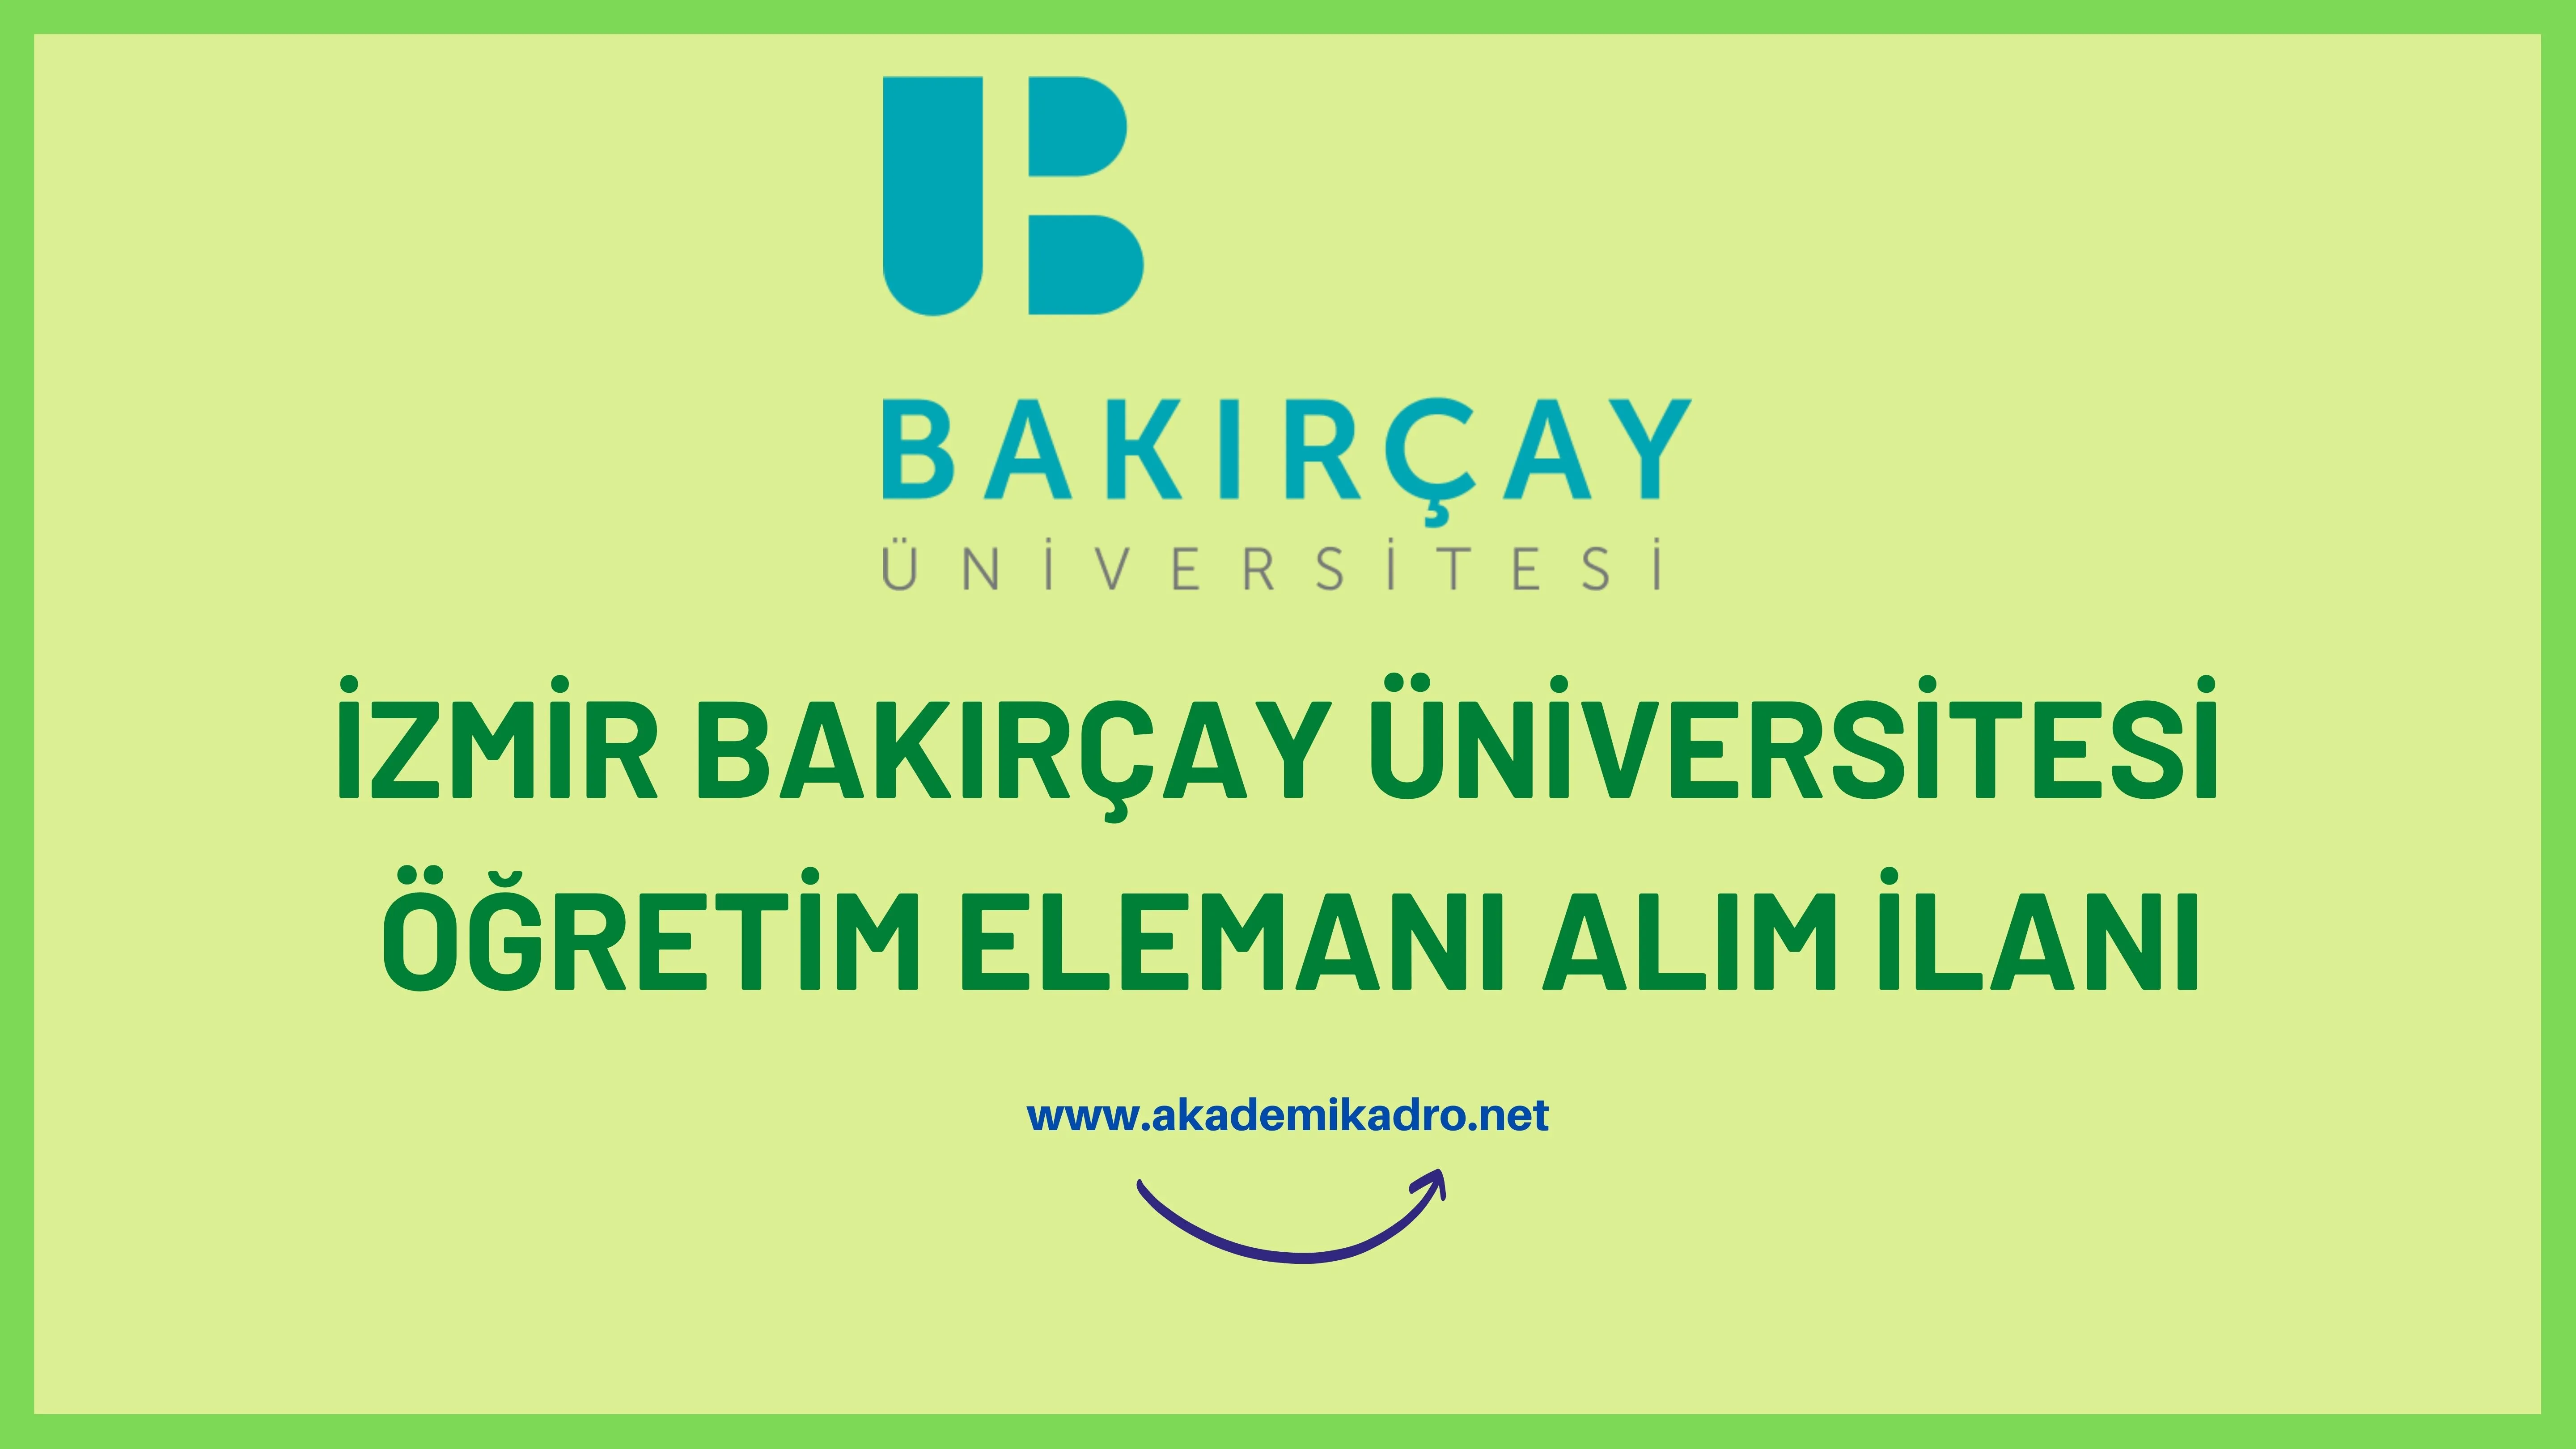 İzmir Bakırçay Üniversitesi 5 öğretim üyesi ve 2 Öğretim görevlisi alacak.